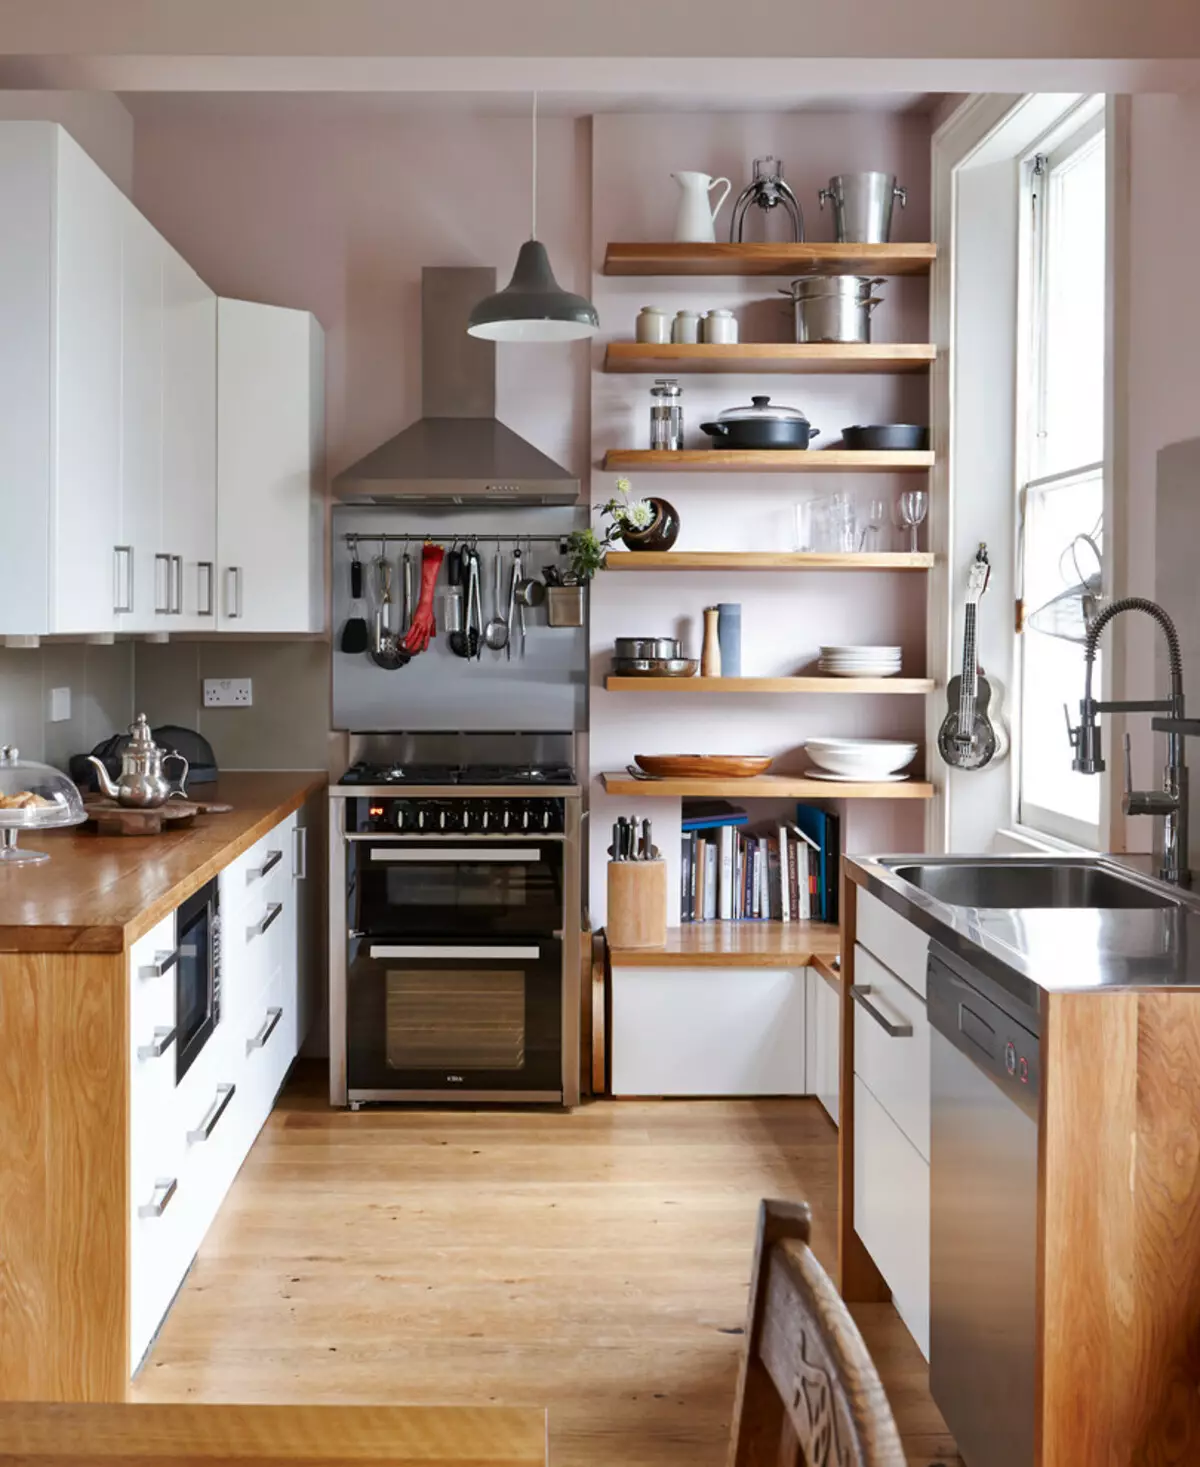 چگونه یک آشپزخانه کوچک را تجهیز کنیم؟ 91 عکس تصمیمات آشپزخانه جالب، ایده هایی برای ایجاد آشپزخانه کاربردی کوچک 9521_23